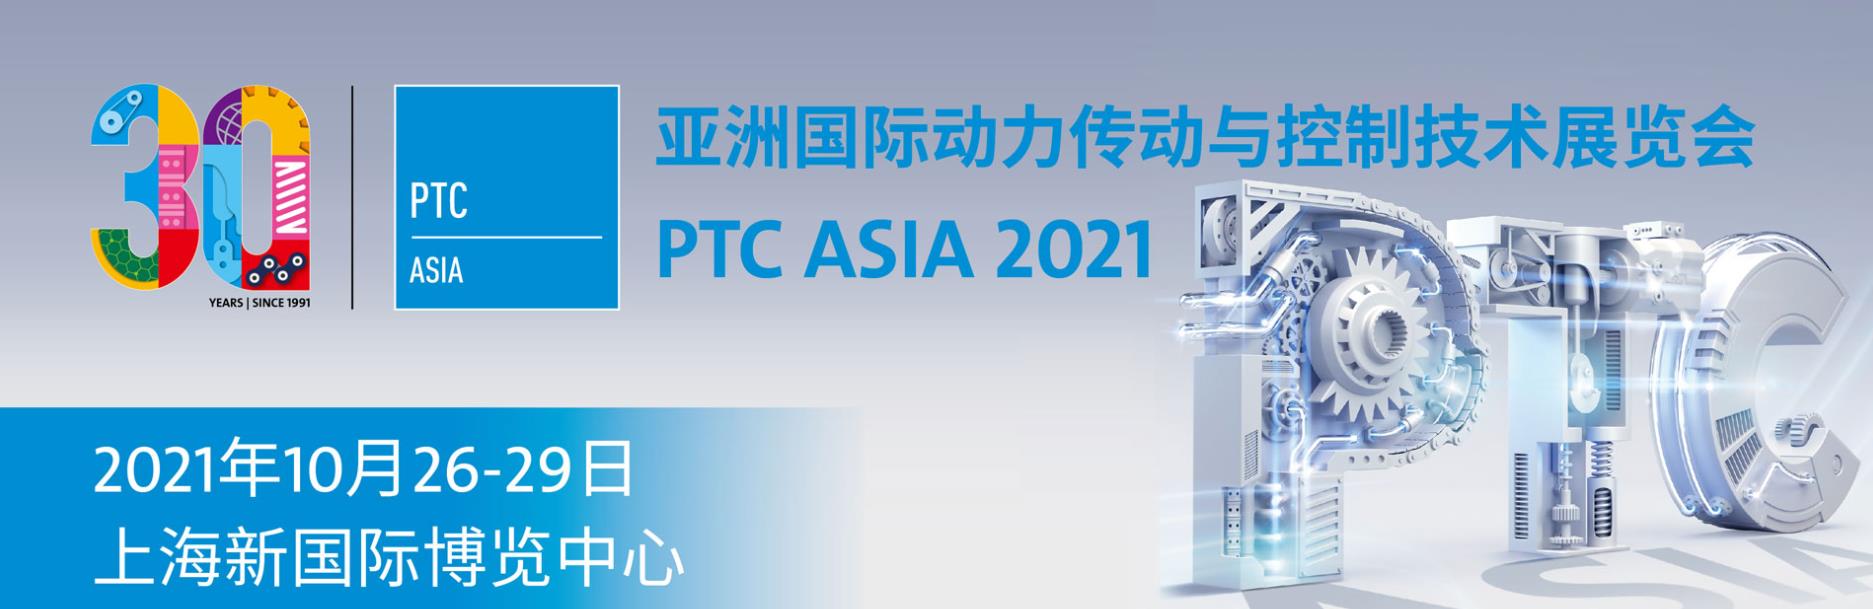 PTC ASIA 2021 亚洲国际动力传动与控制技术展览会